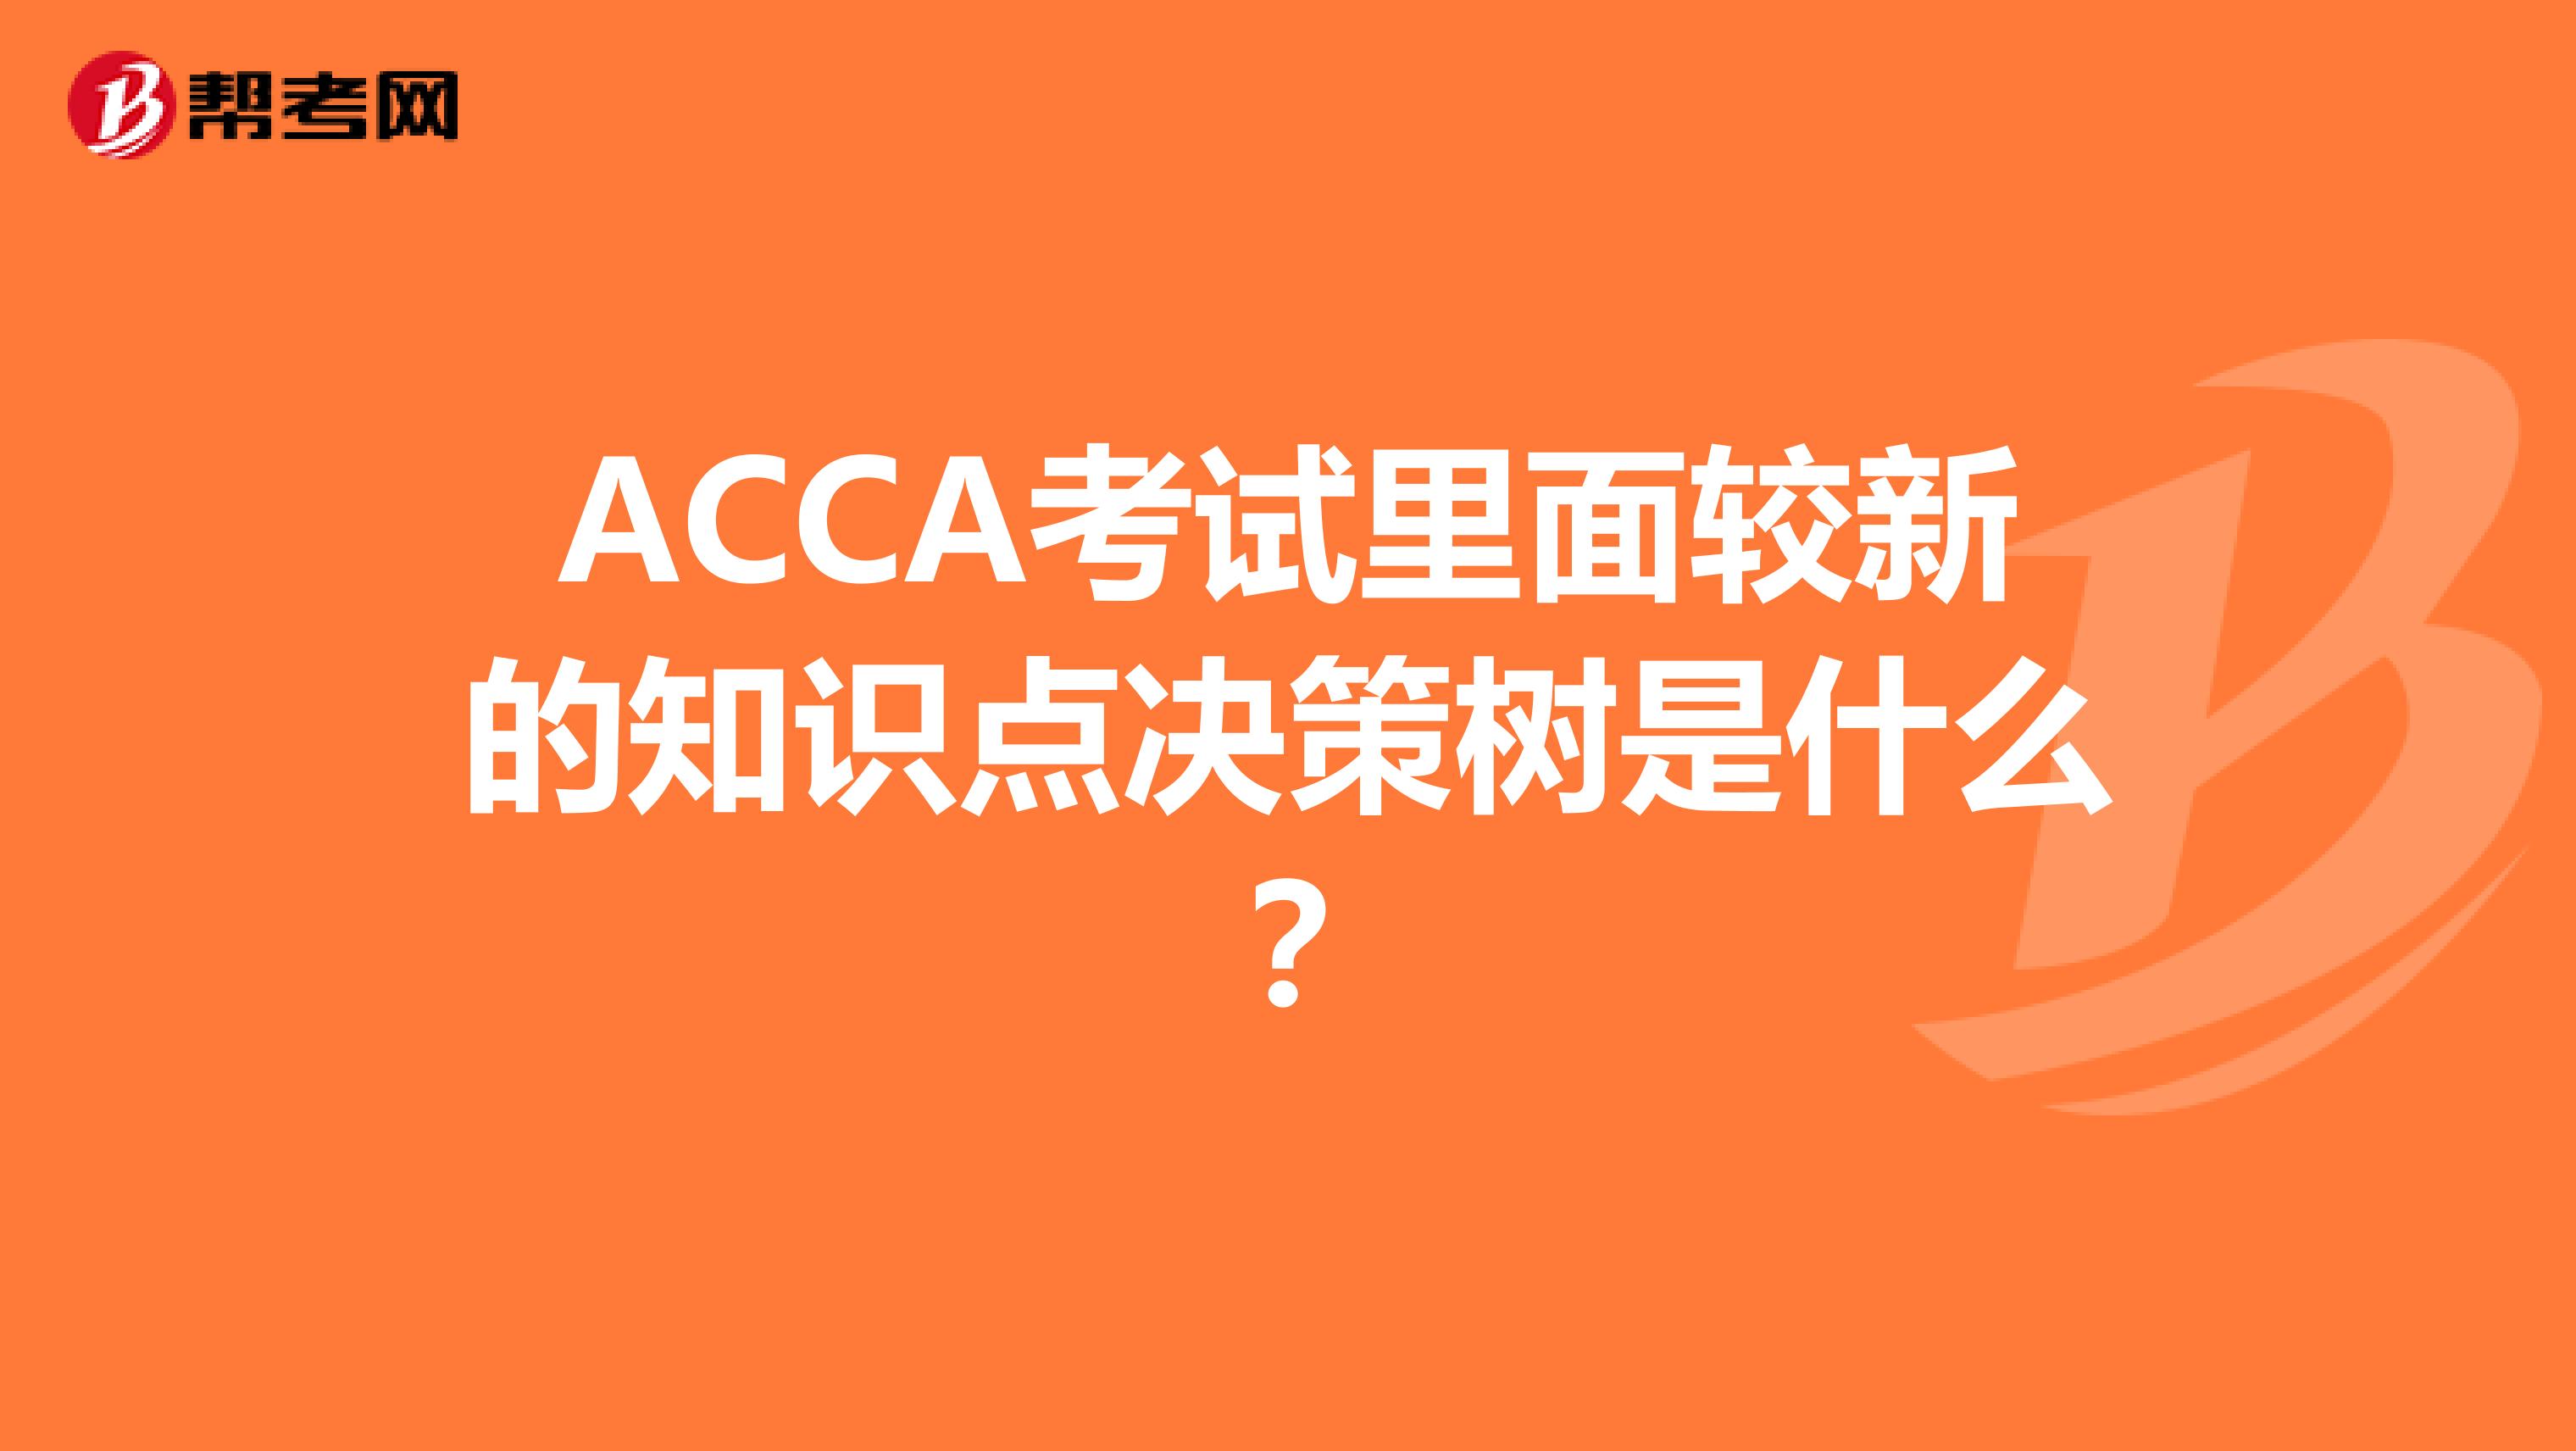 ACCA考试里面较新的知识点决策树是什么？